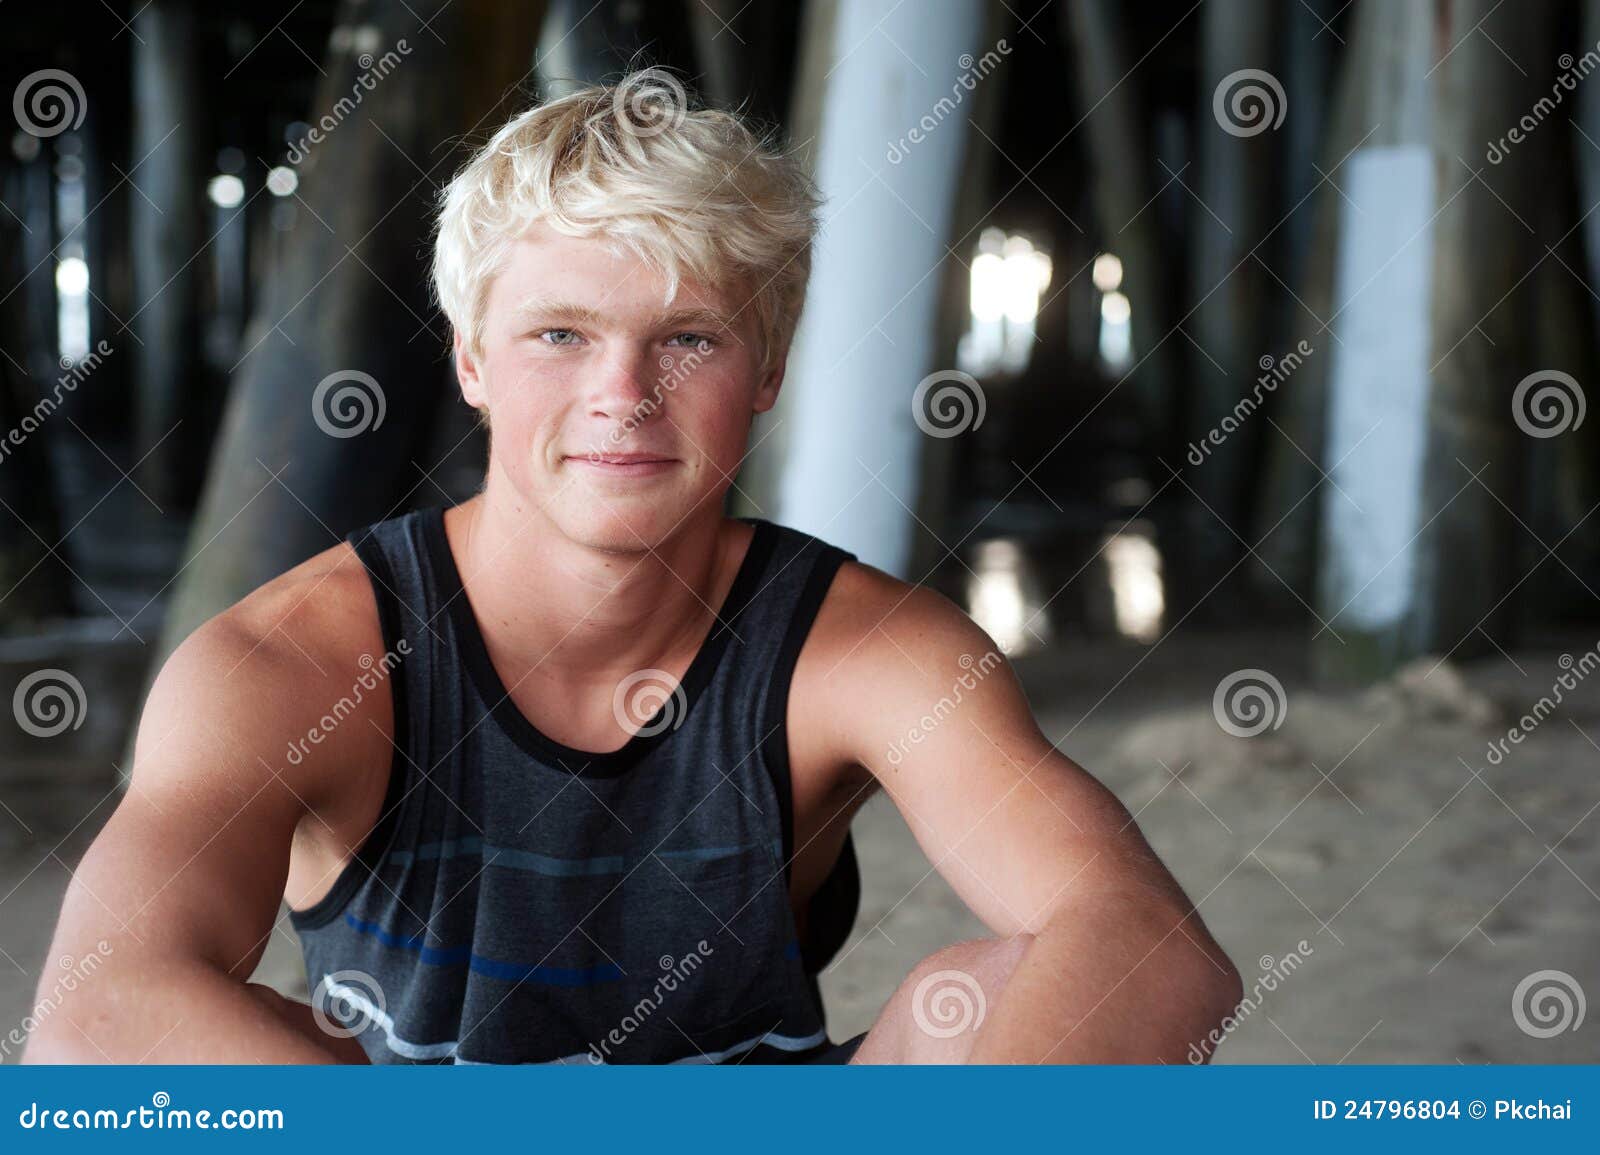 1. "Beachy Blonde Surfer Hair" - wide 5